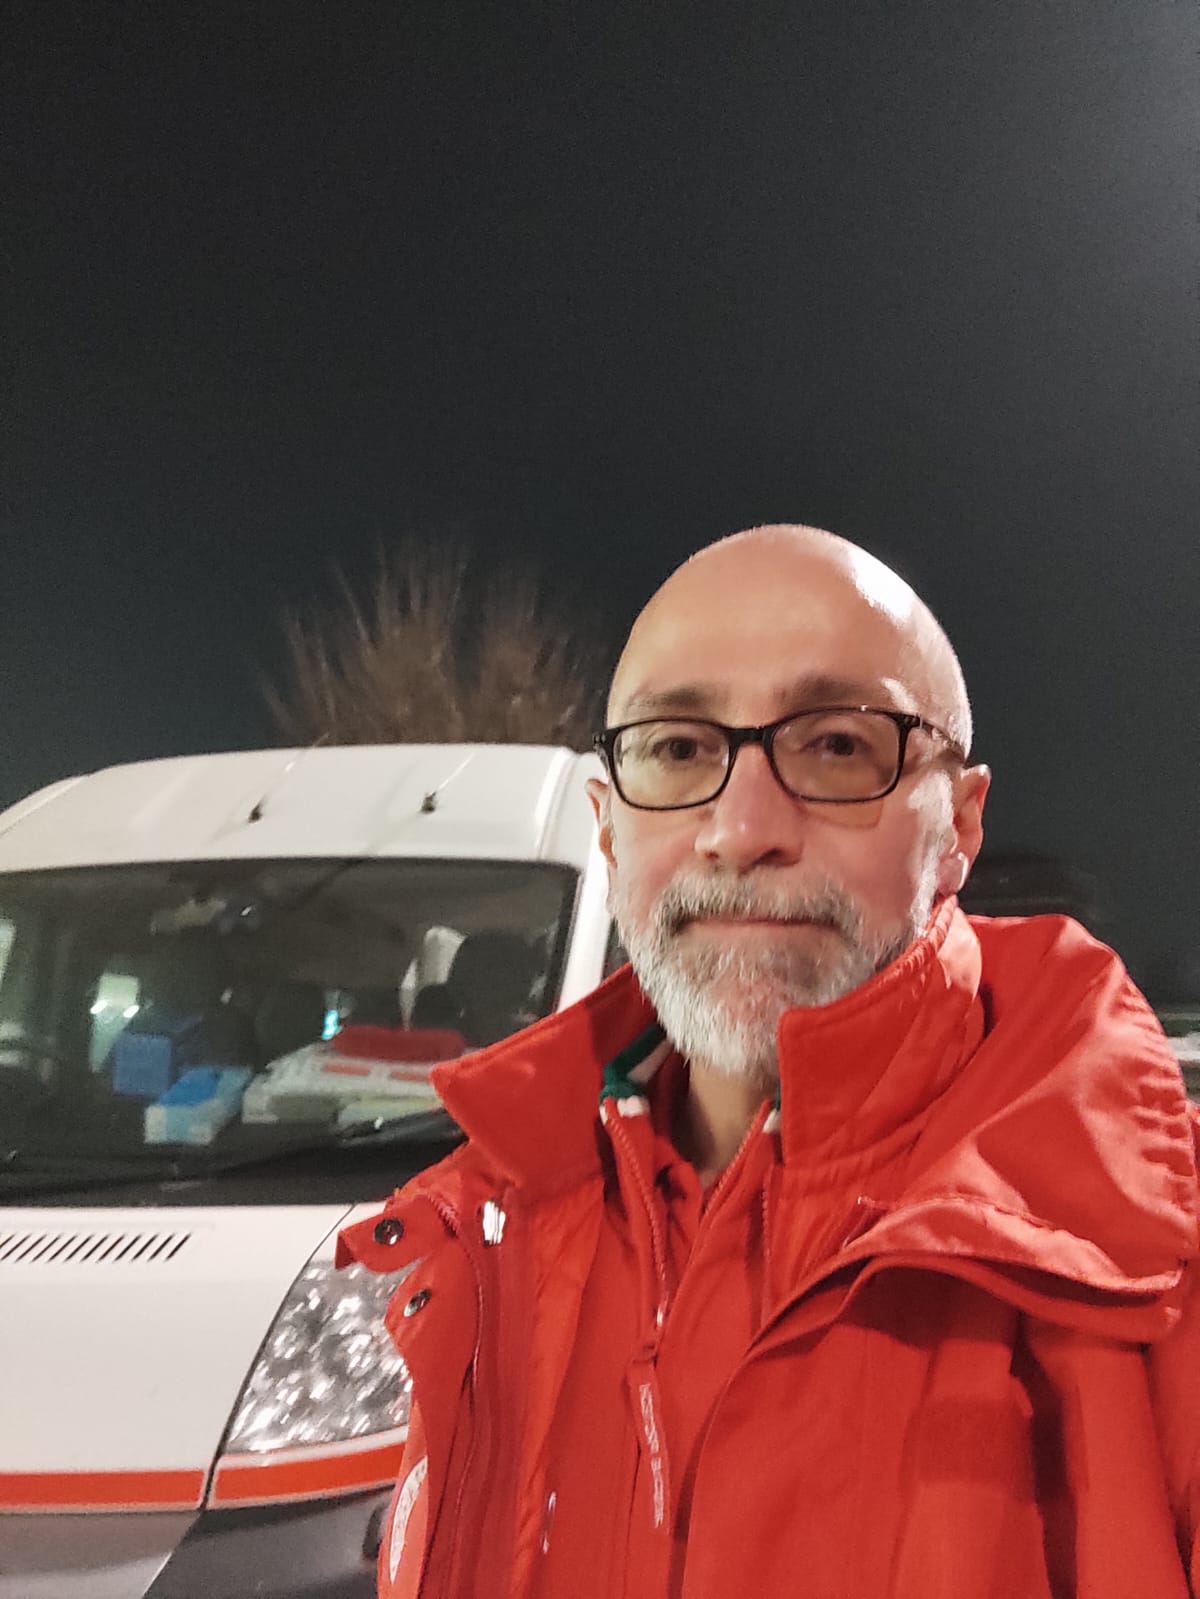 La Cri di Trofarello si presenta – Intervista a Giancarlo Fassi: in Croce Rossa perché così mi sento a casa